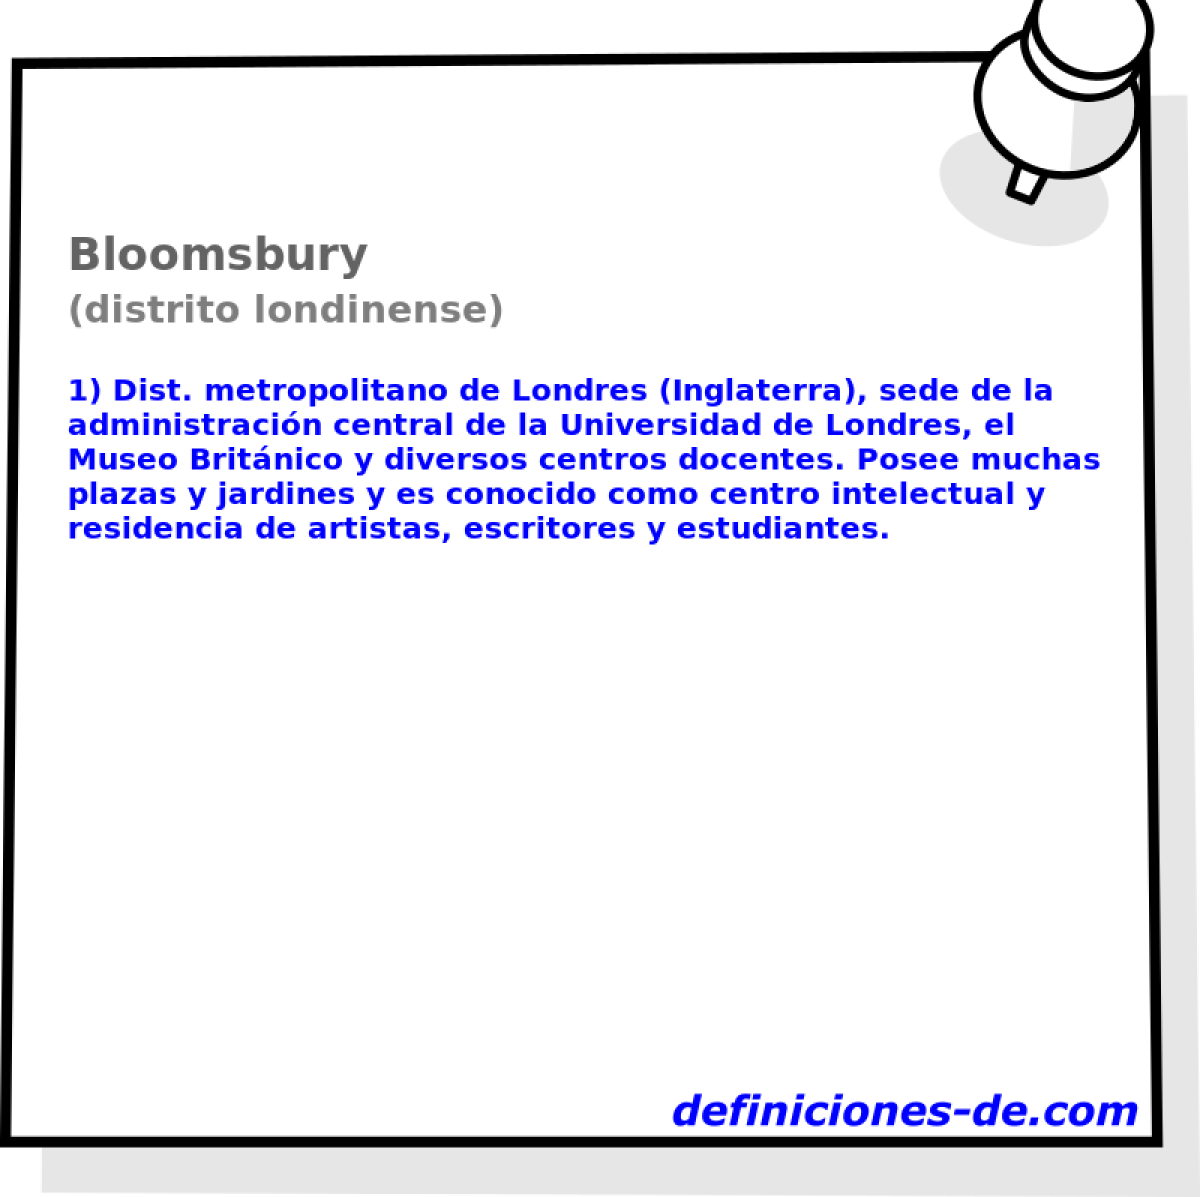 Bloomsbury (distrito londinense)